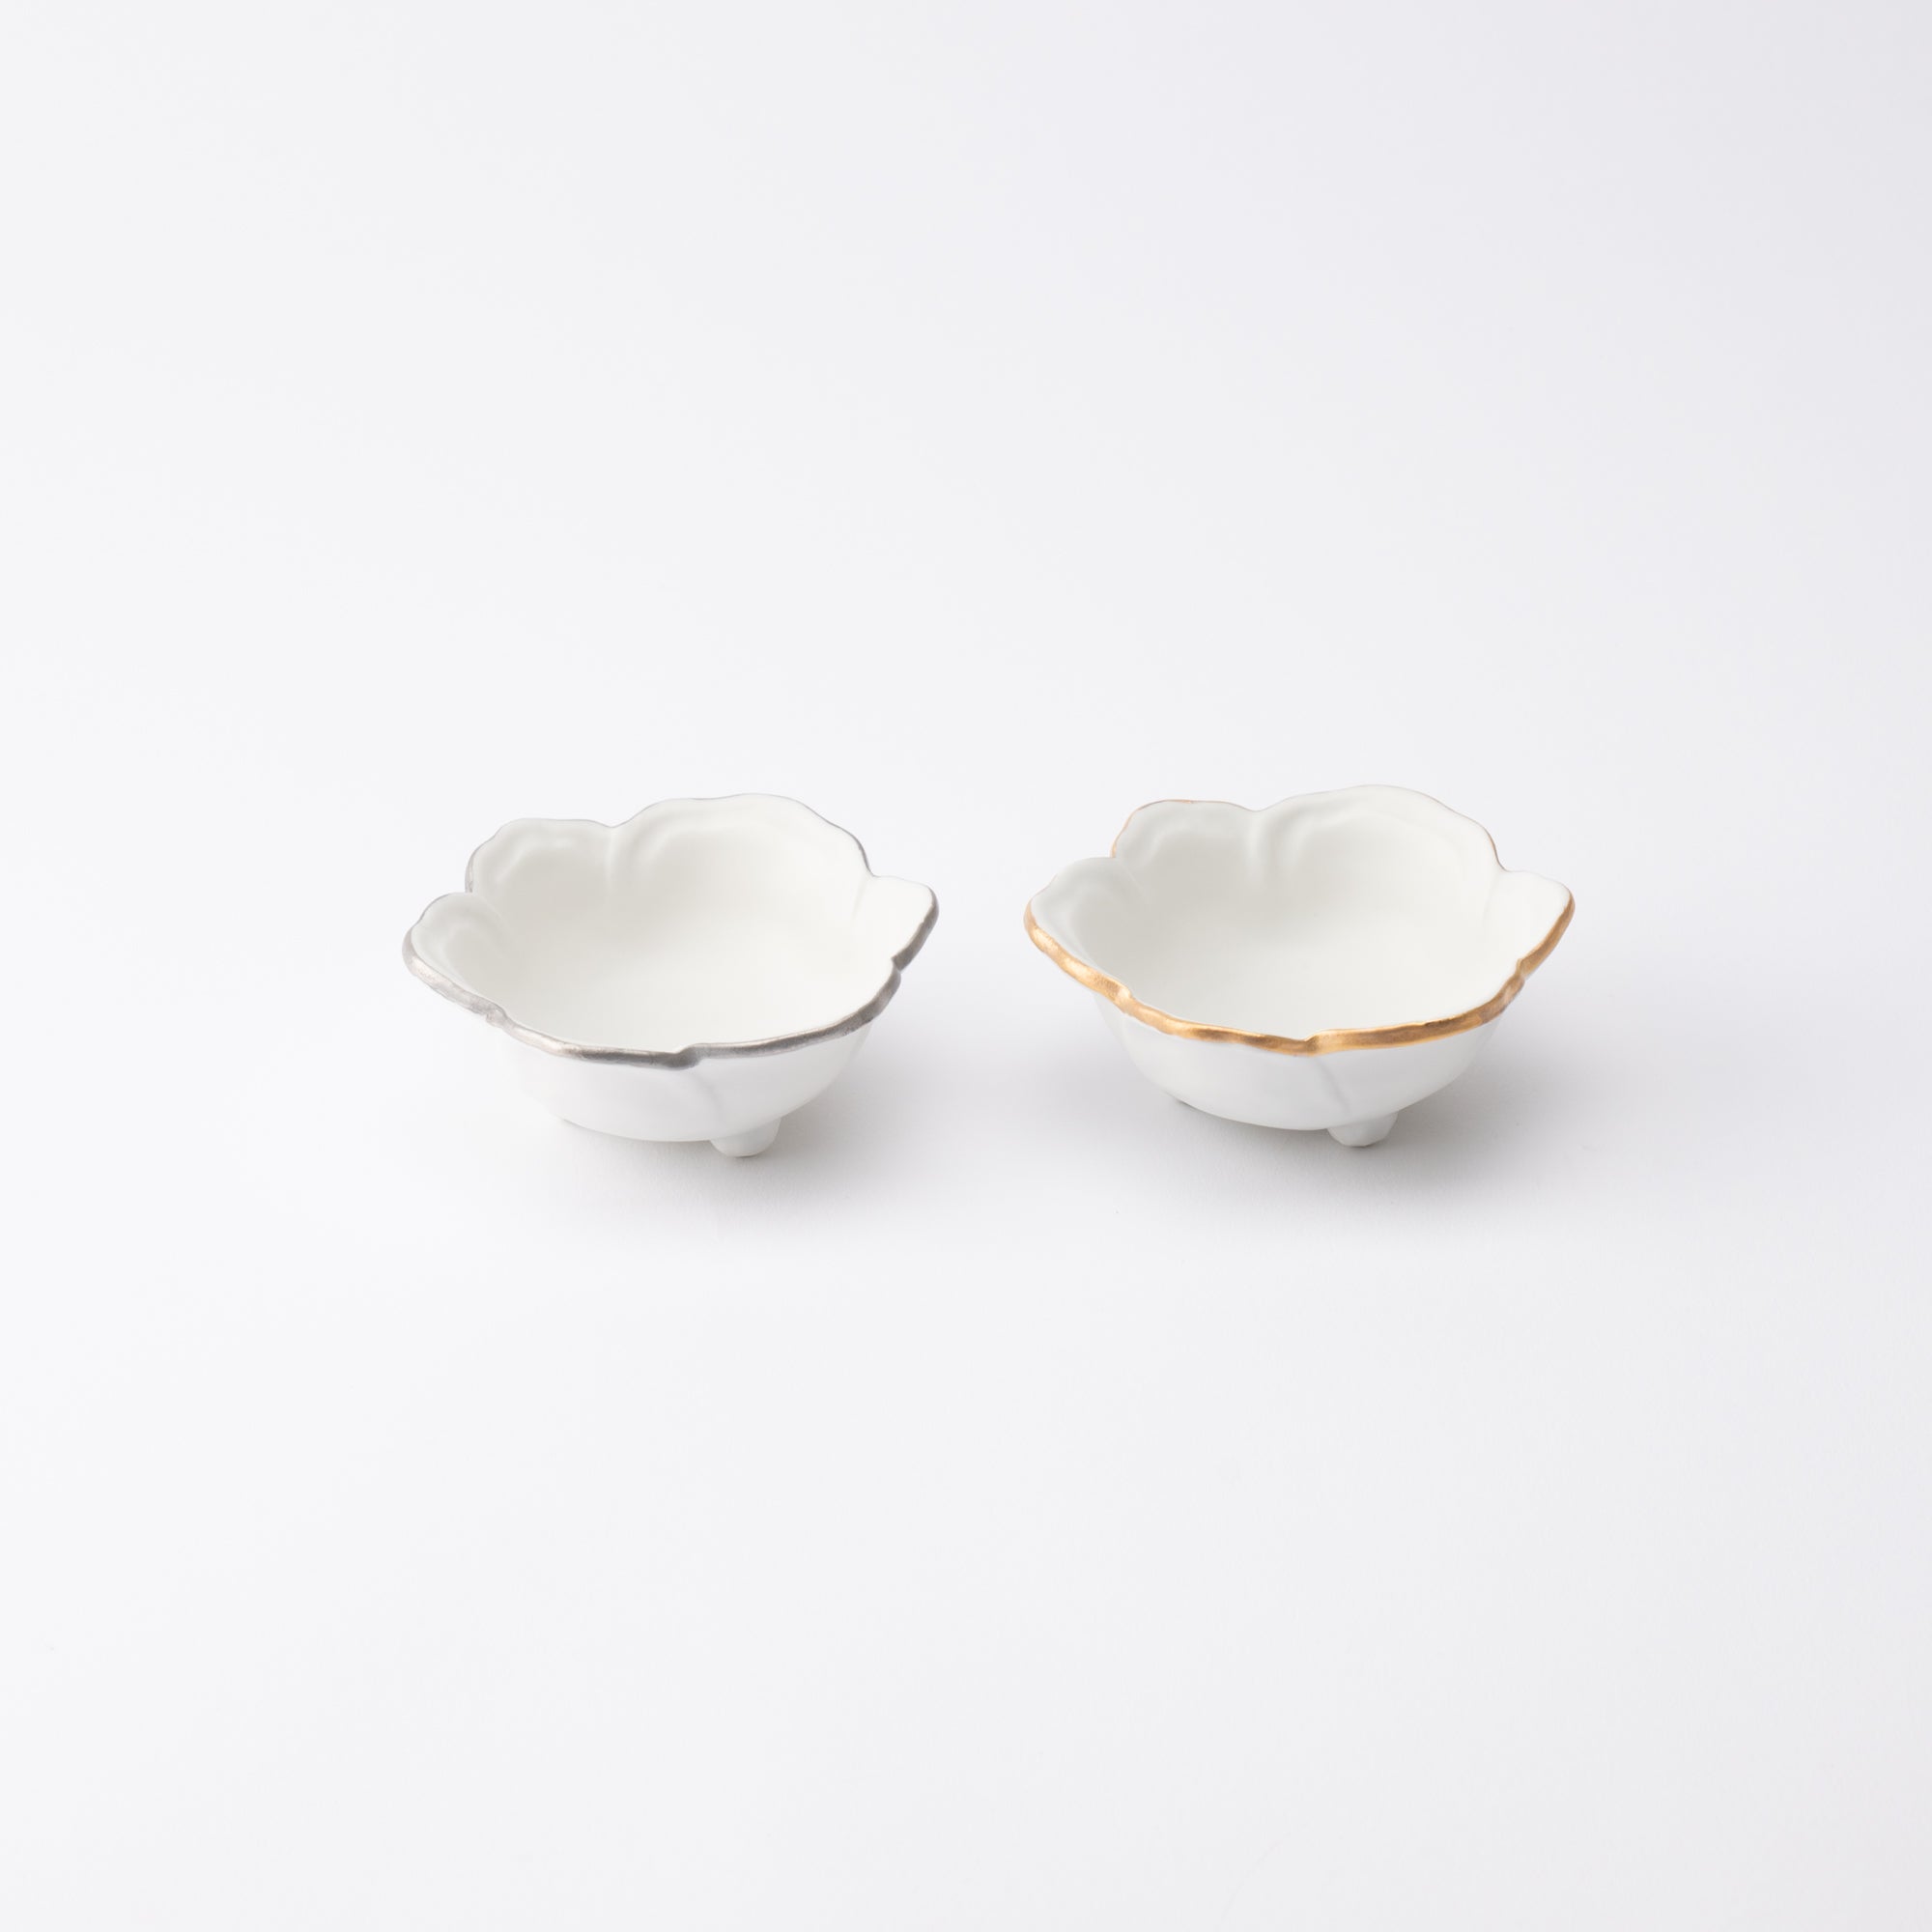 Japanese Porcelain Bowl Vtg Kobachi C1930 Floral Butterfly Design